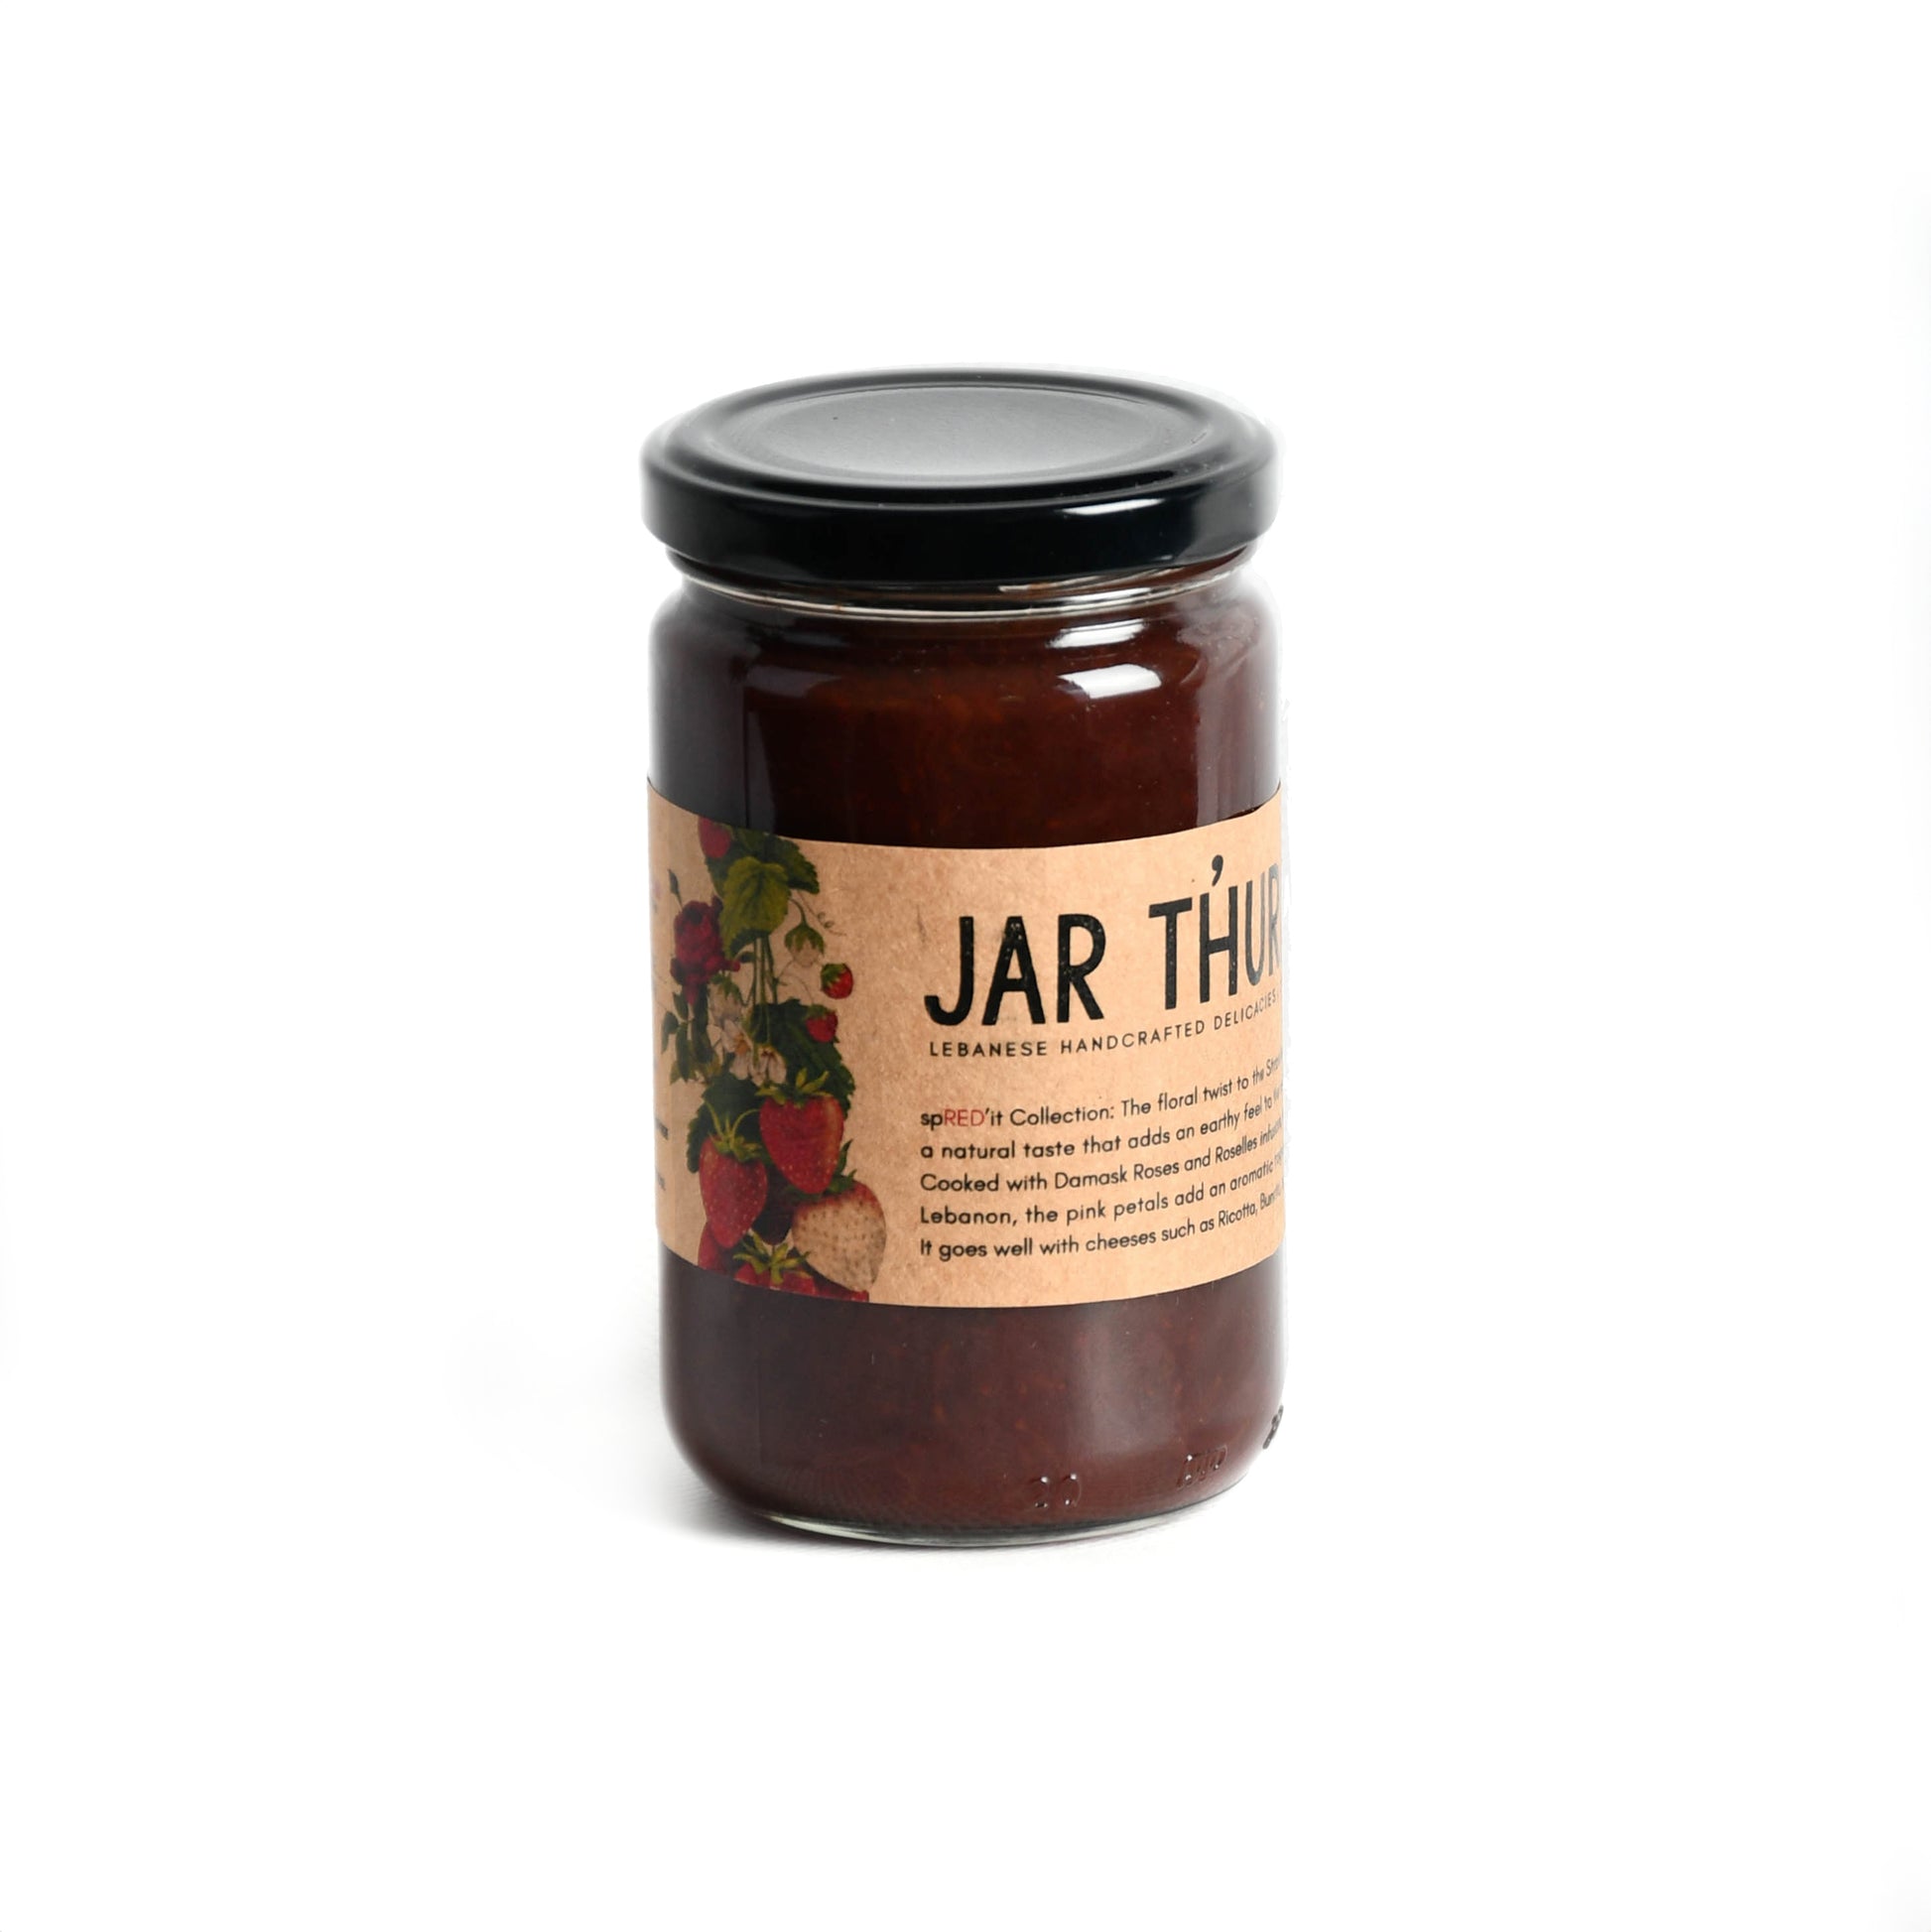 a glass jar of strawberry jam and rose petals